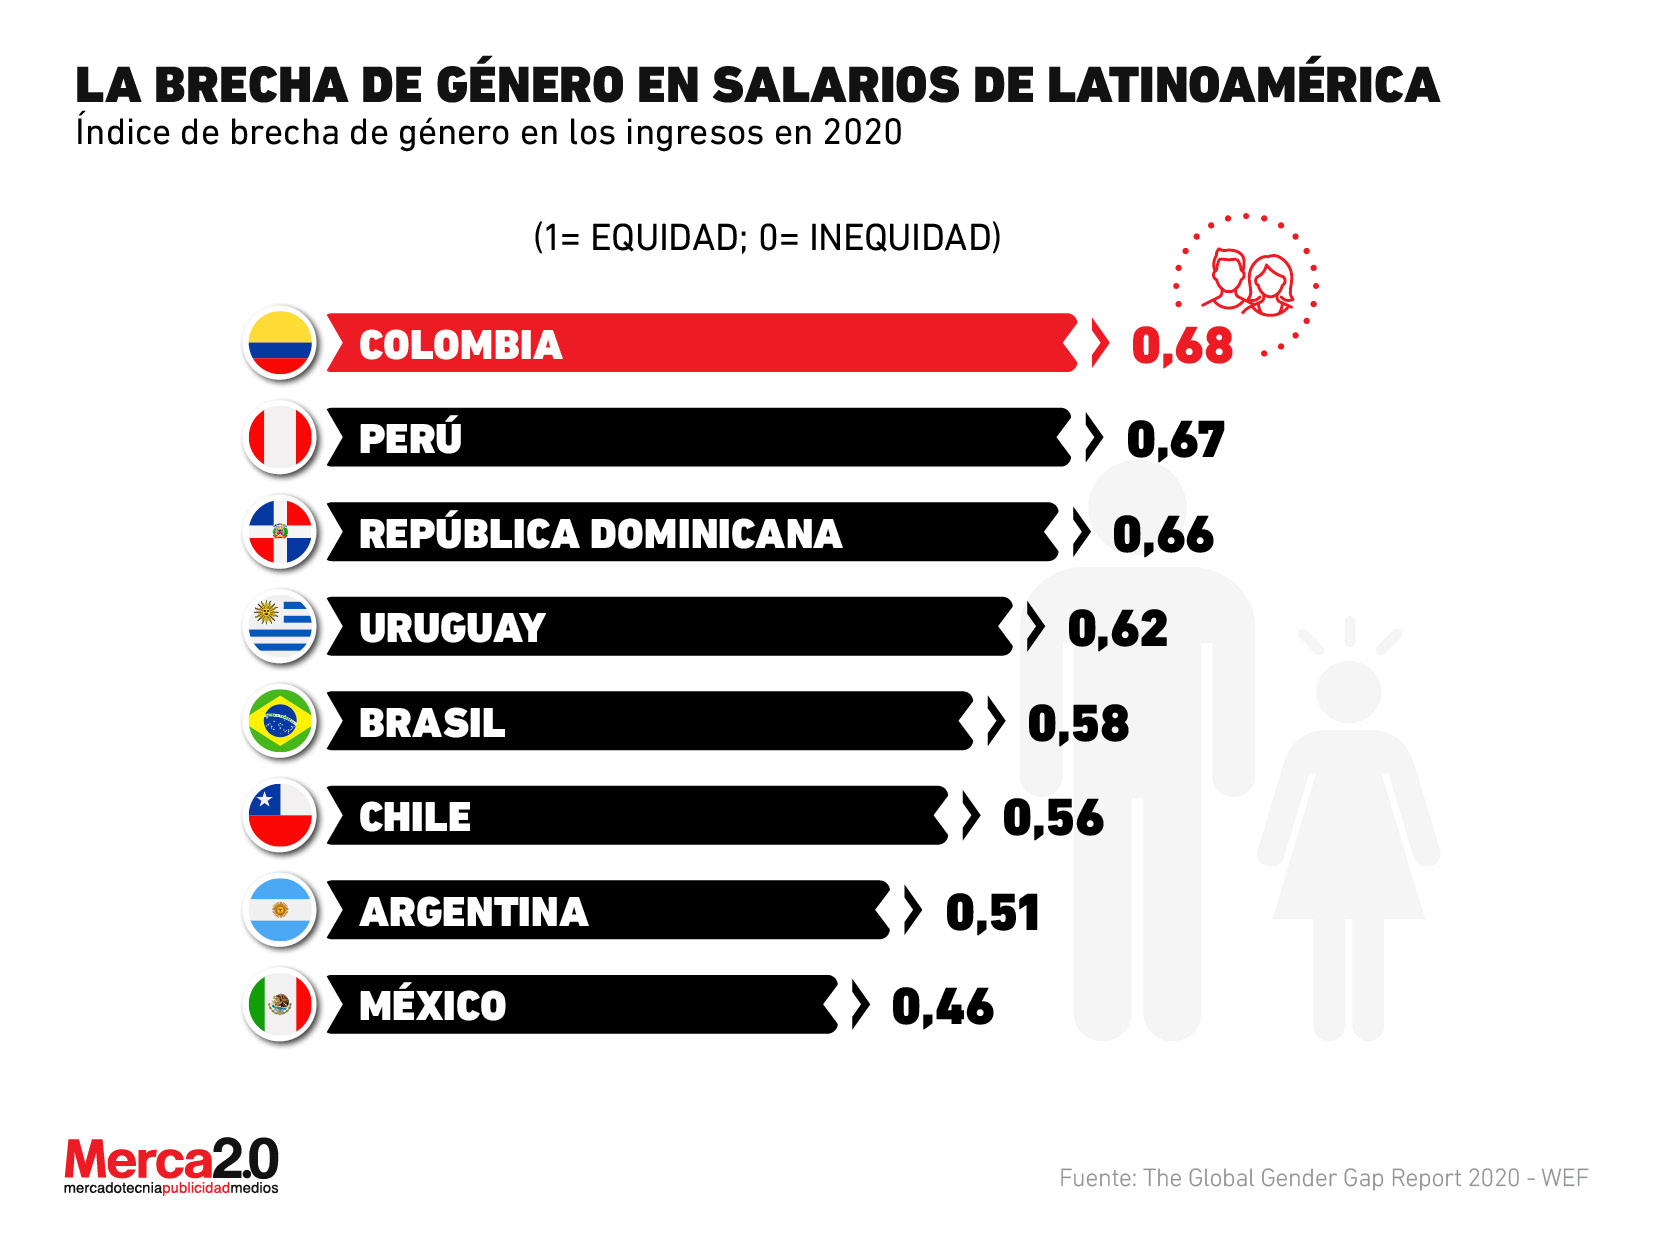 ¿Qué país tiene la peor brecha de género